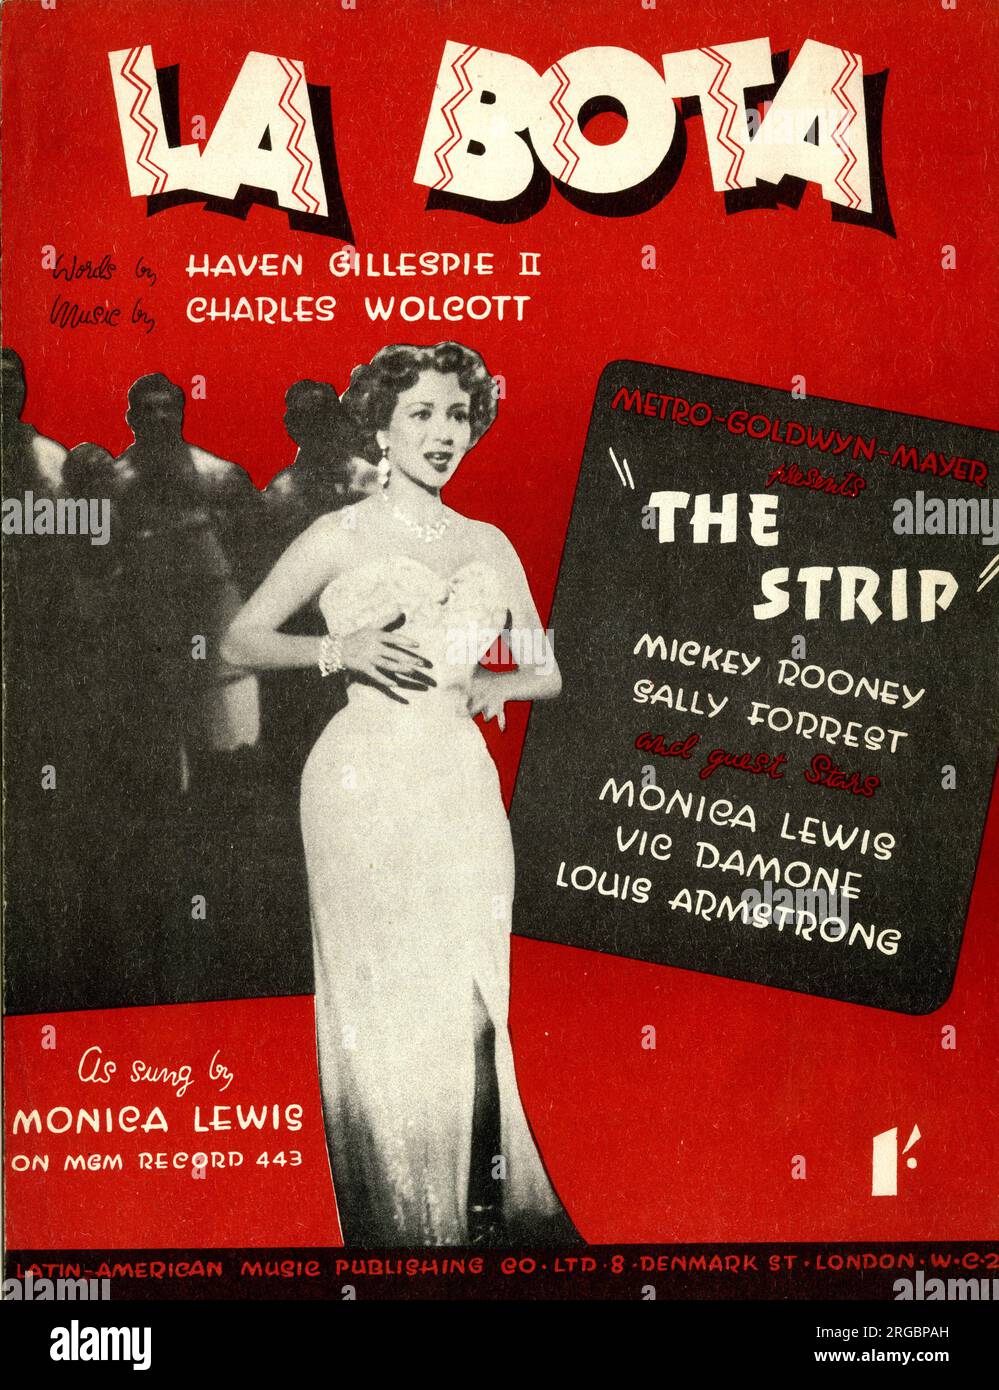 Couverture musicale, la Bota, Words by Haven Gillespie II, musique de Charles Wolcott, chantée par Monica Lewis dans le film MGM The Strip Banque D'Images